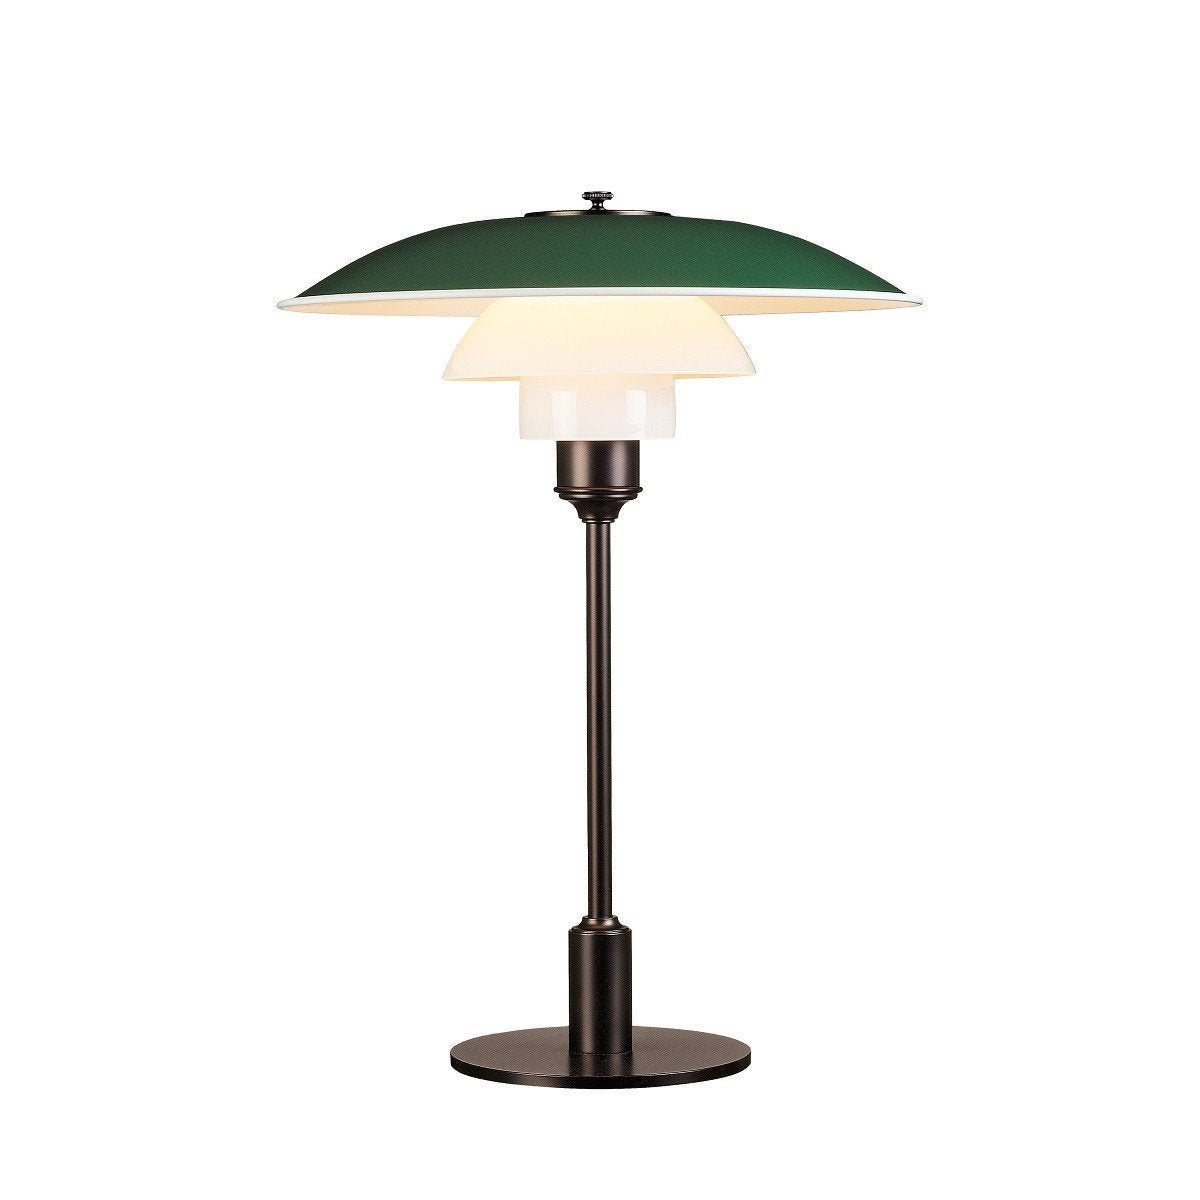 Louis Poulsen PH 3 1/2 2 1/2 lampe de table, vert